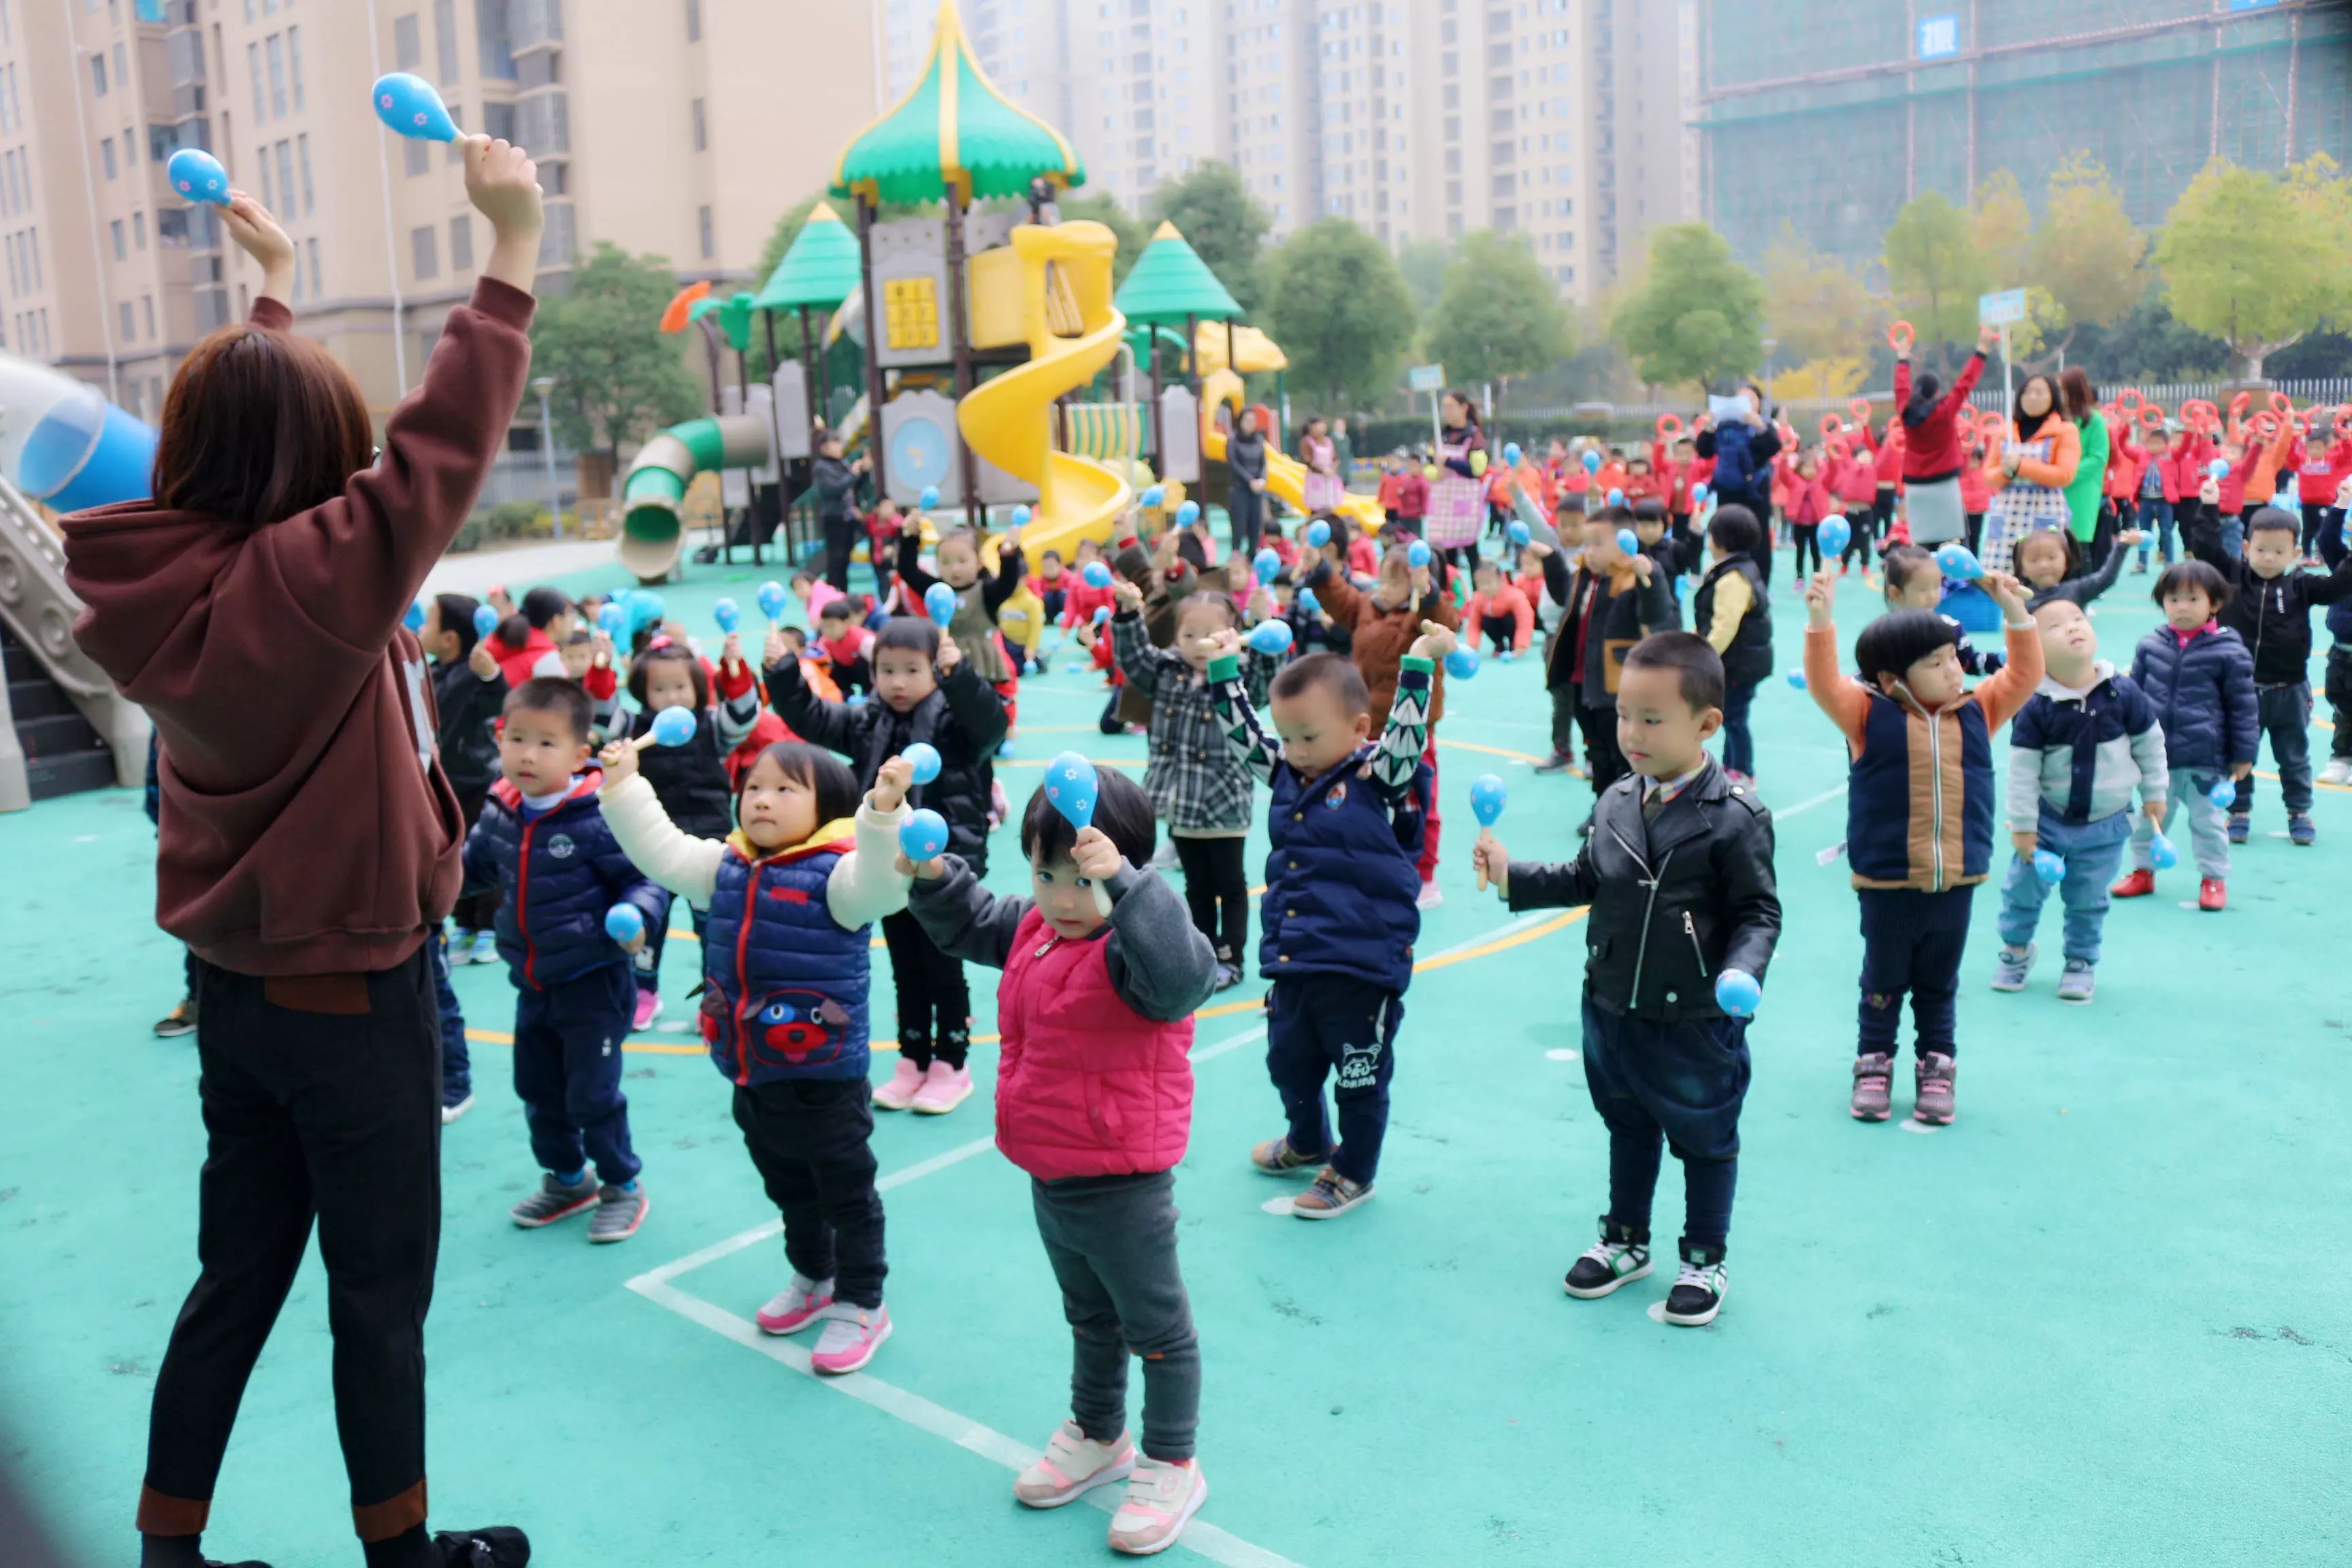 制作棍棒操器械 - 家园互动 - 杭州市德胜幼儿园